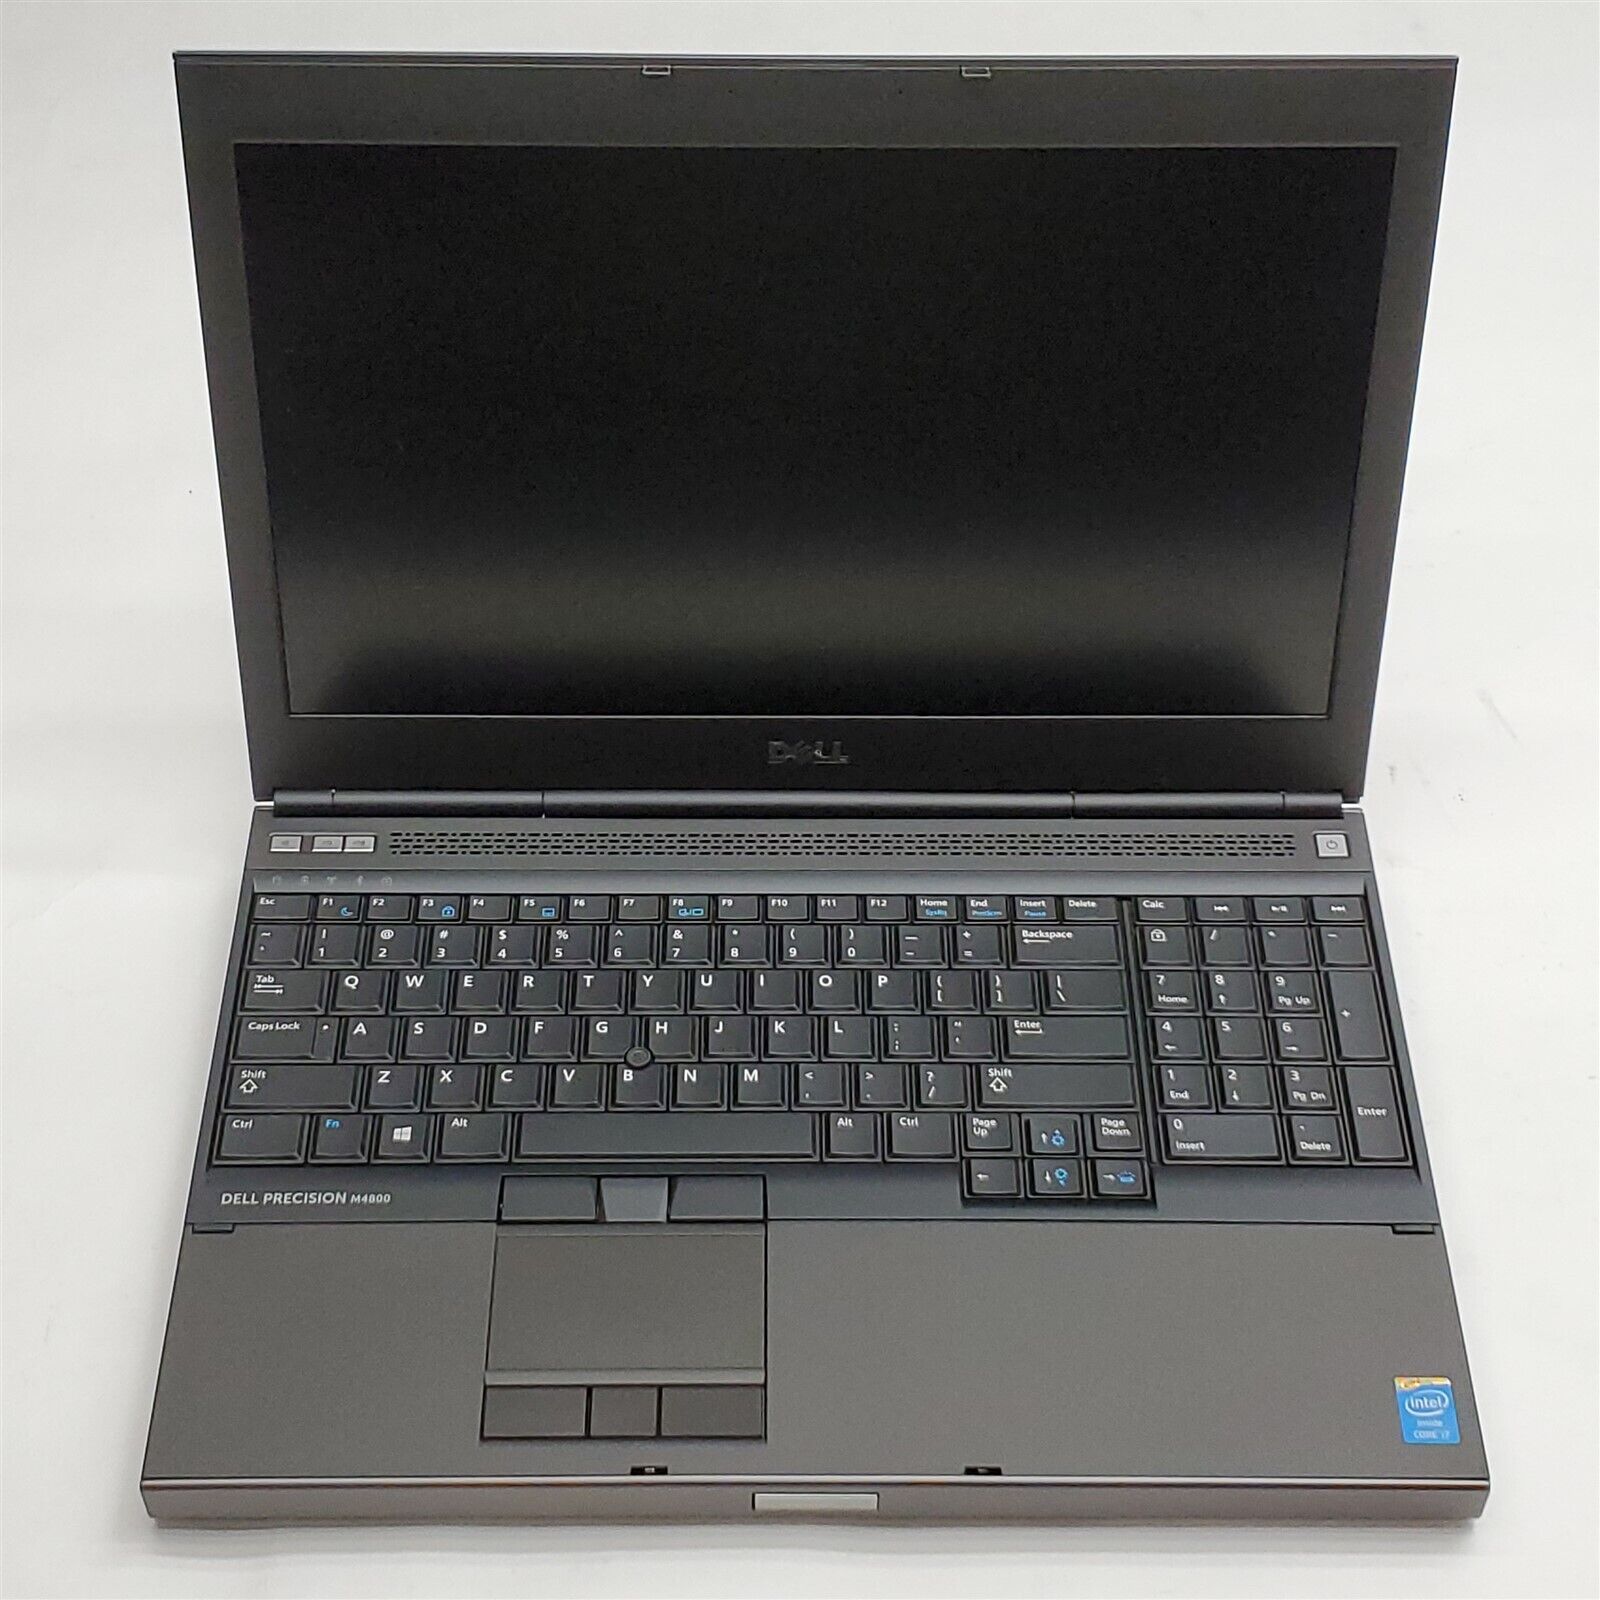 Dell Precision M4800 Laptop i7 4900MQ 2.80GHZ 15.6